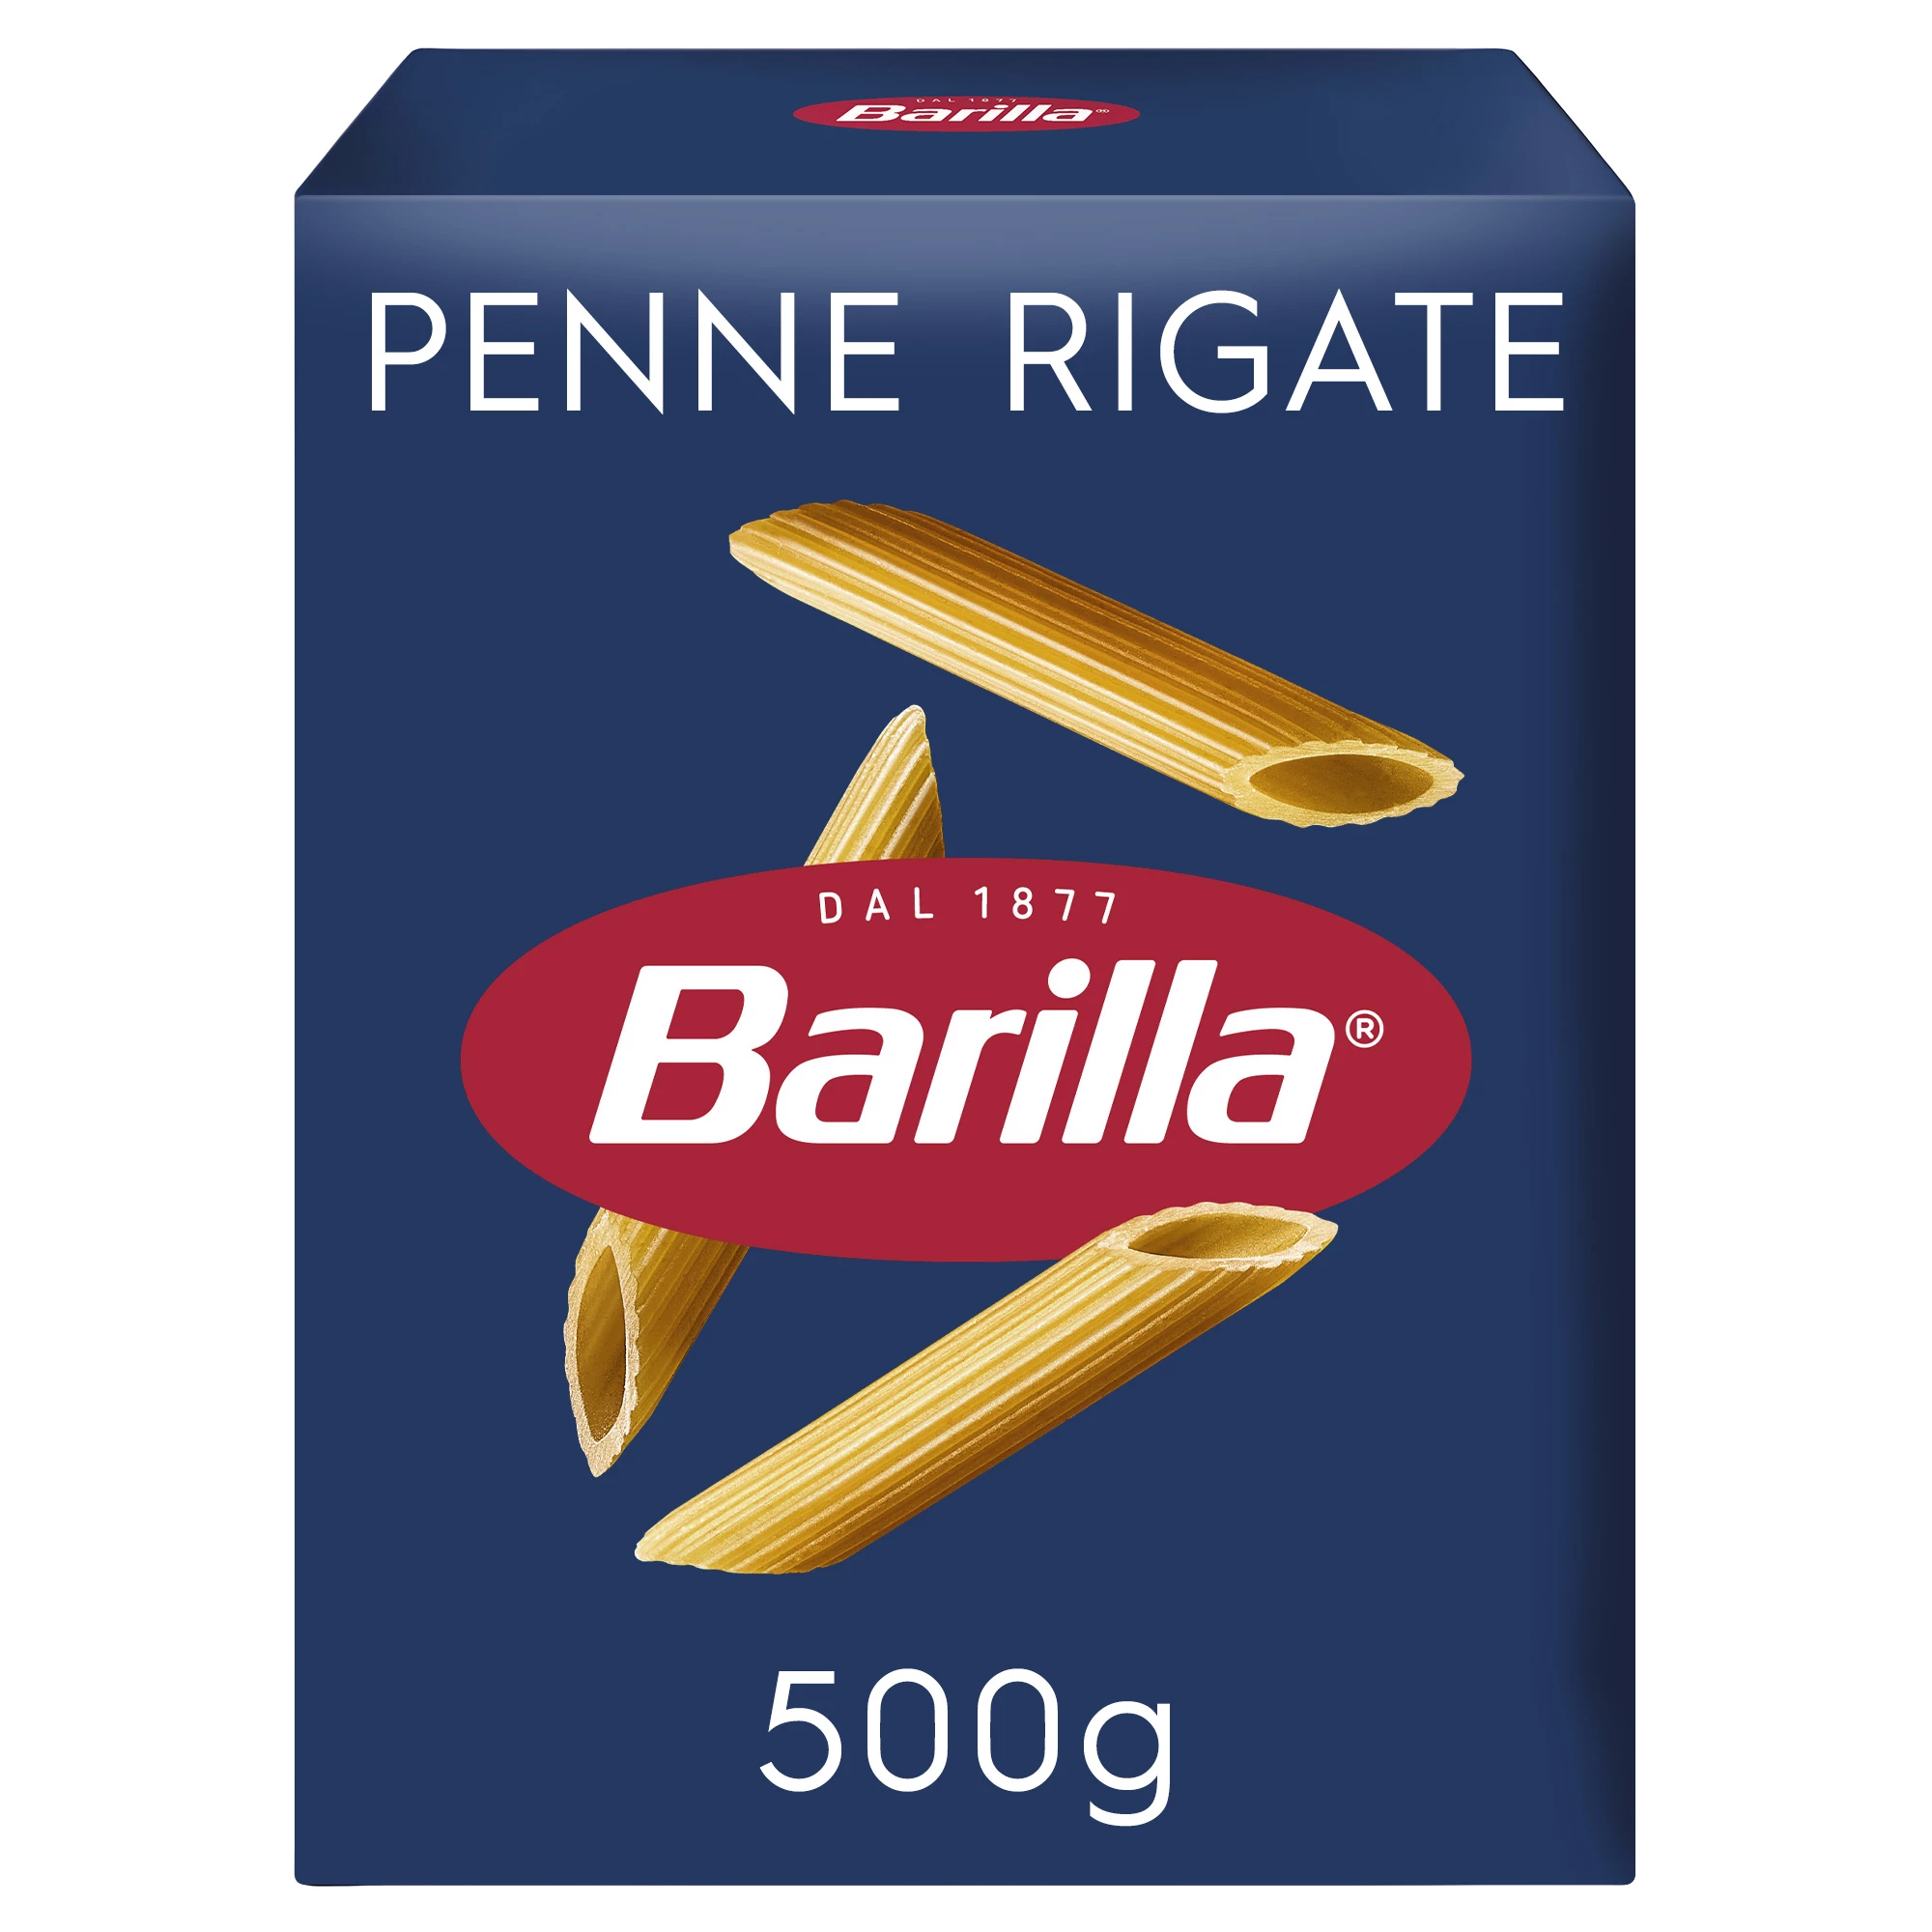 Penne rigate pasta 500g - BARILLA